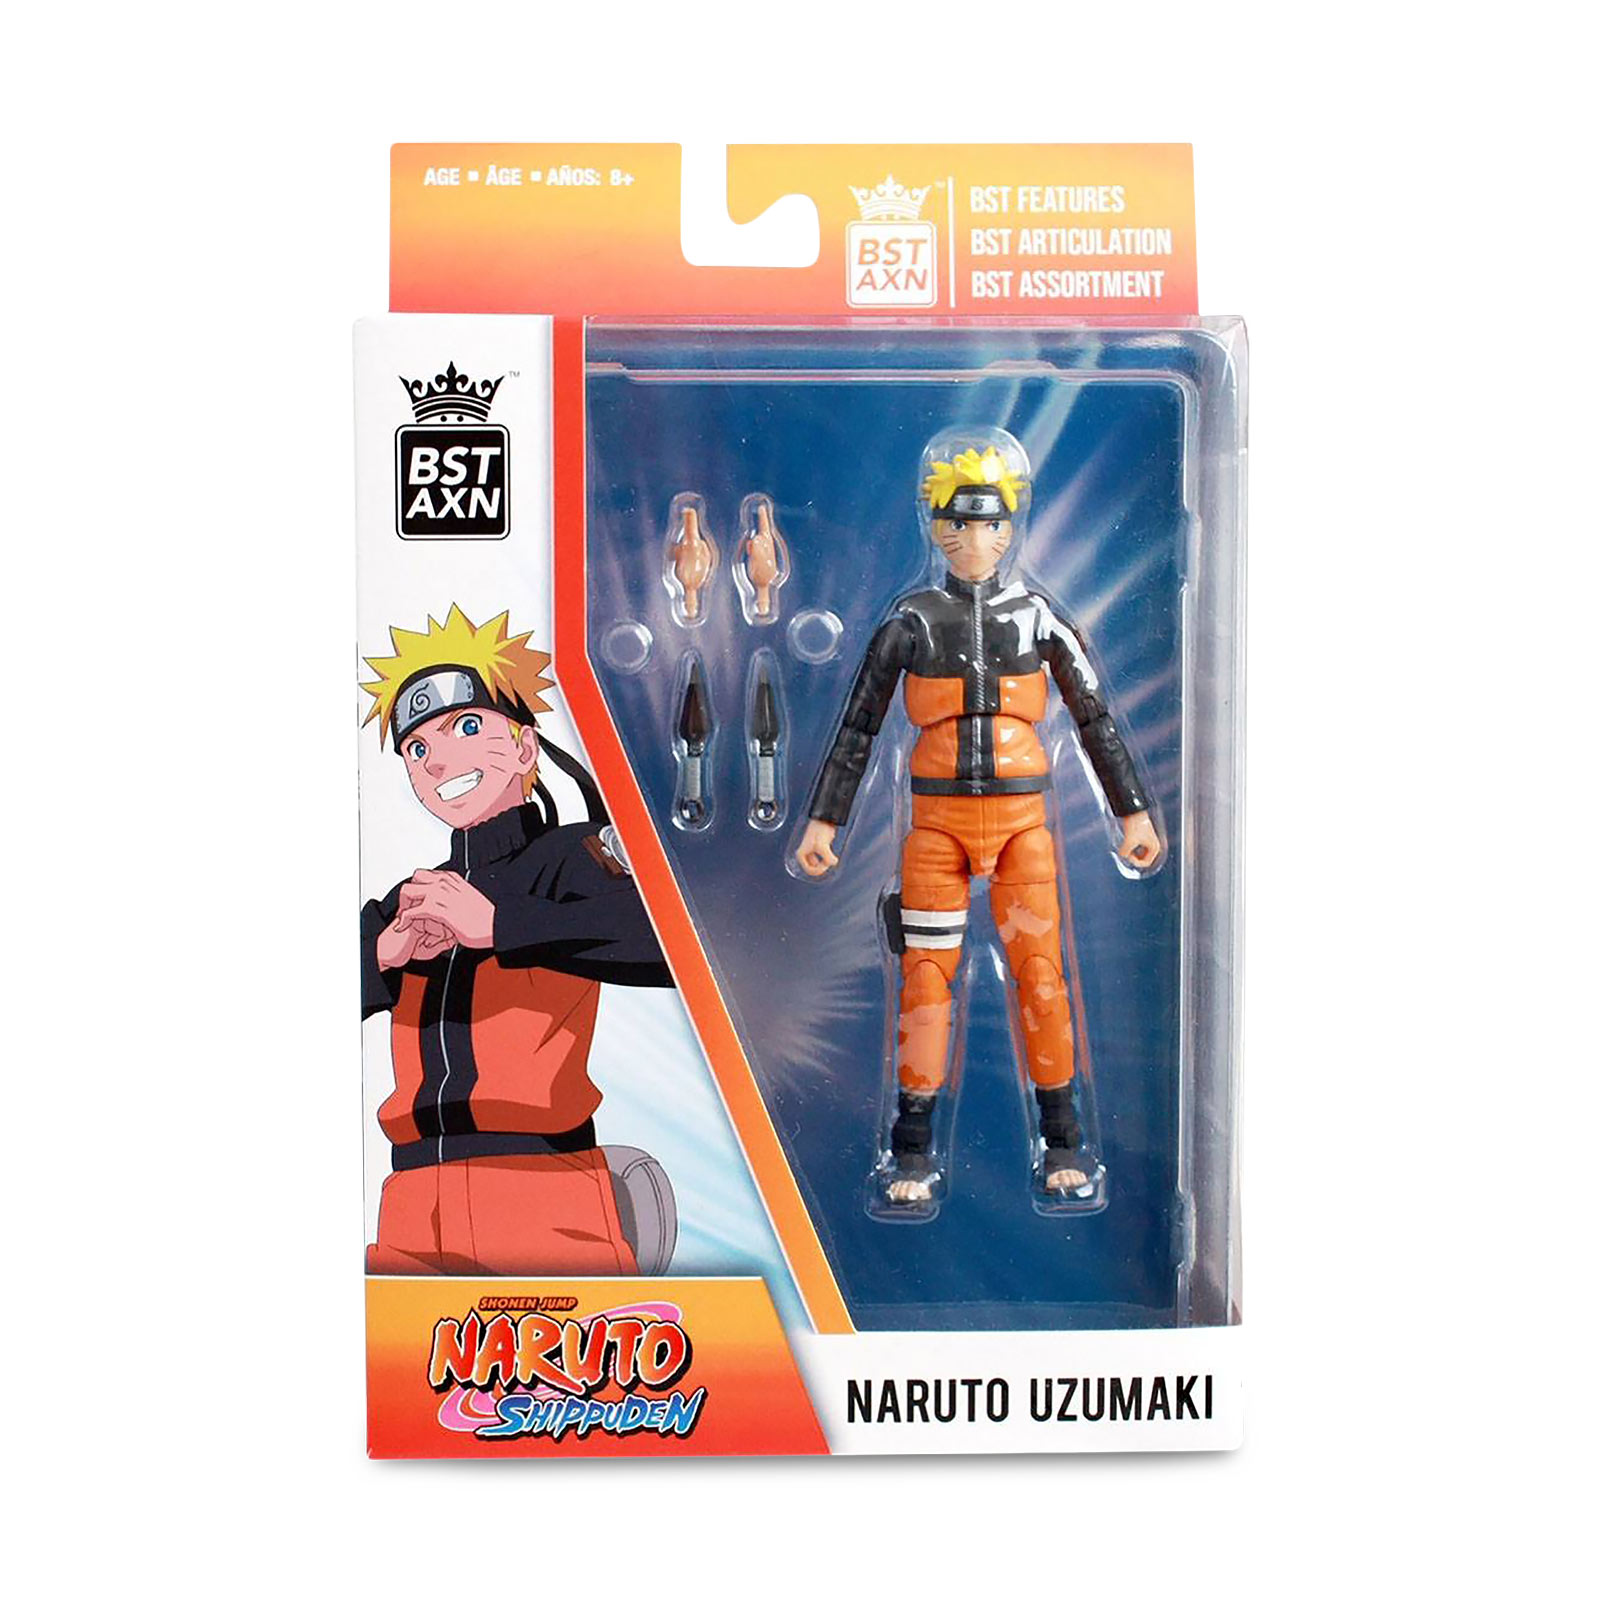 Naruto Uzumaki BST AXN Action Figure 13 cm